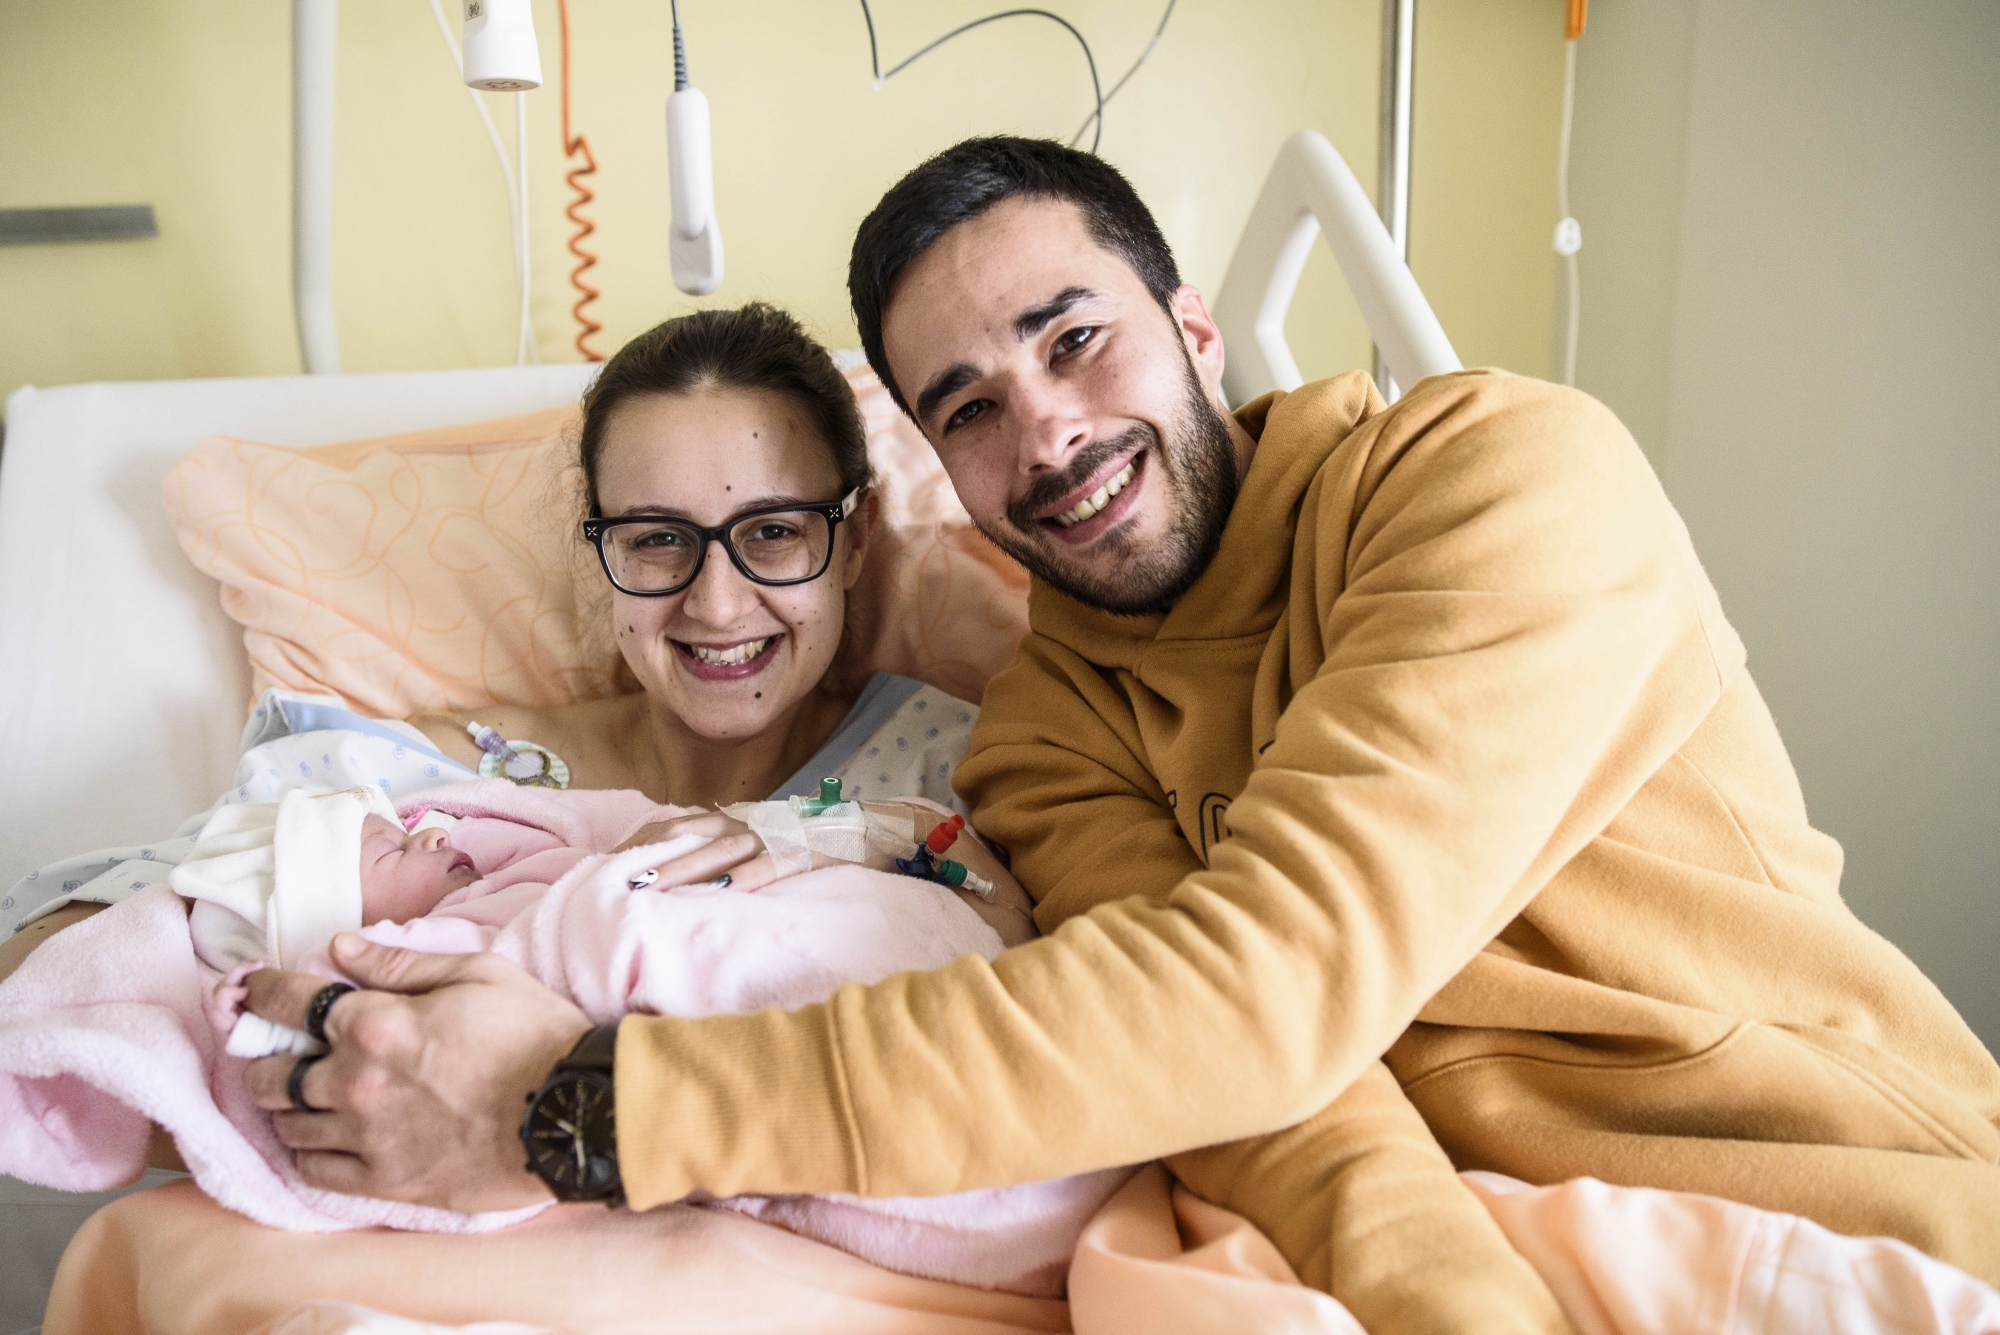 Eva, née le 2 janvier 2019 à 7h17 à l'Hôpital de Nyon, ici avec sa maman et son papa : Marisa Mendes et Michael Serrano.